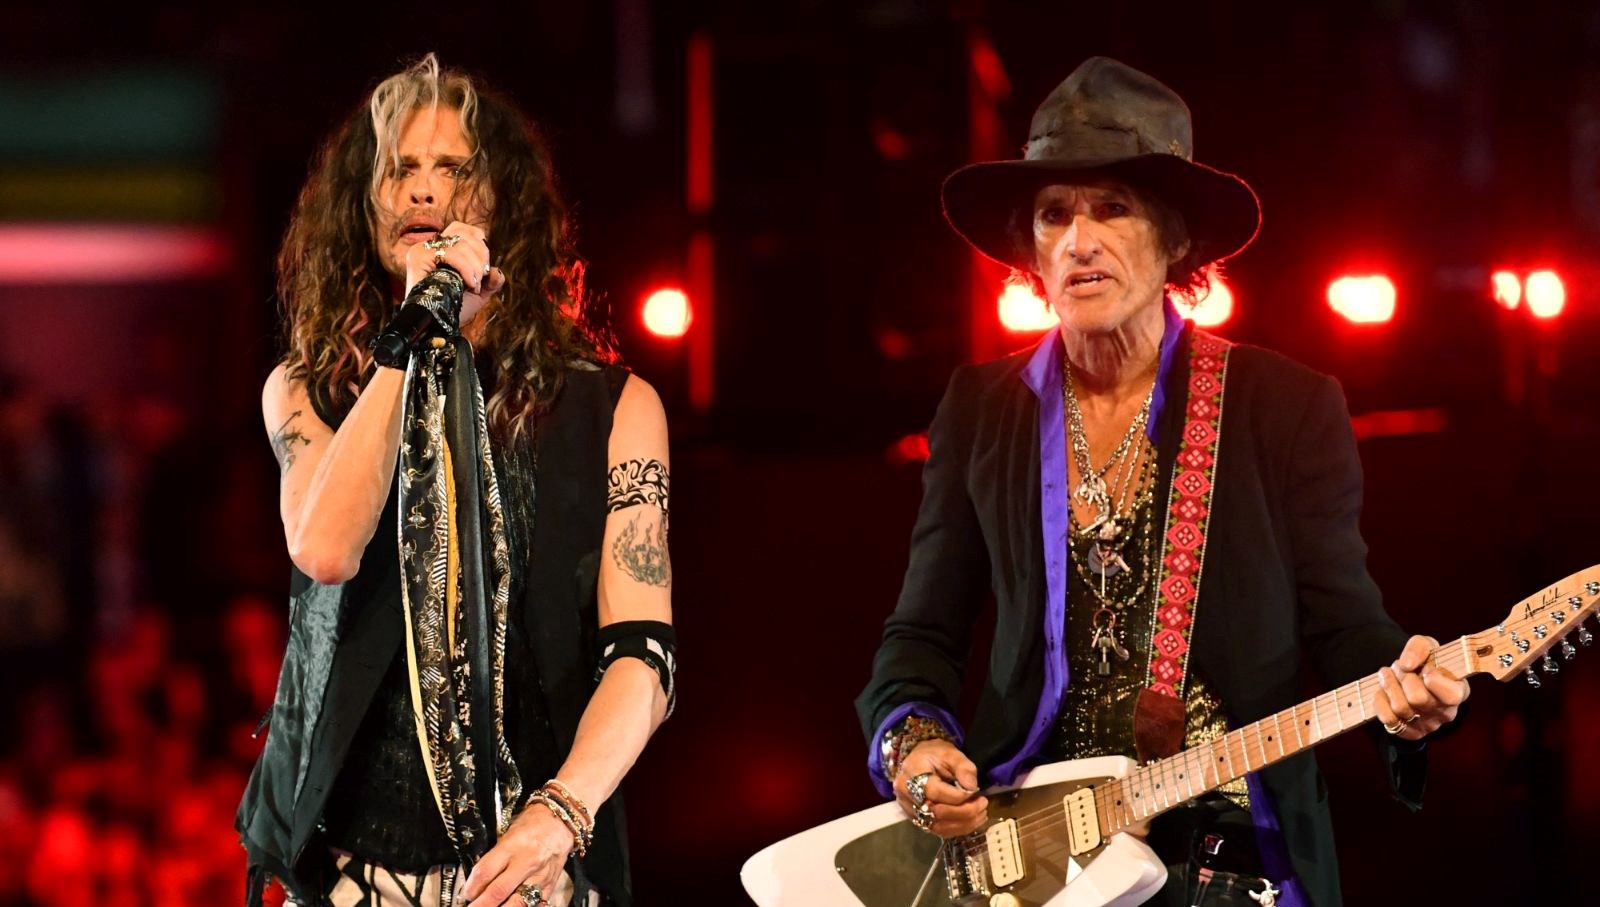 Ünlü rock kümesi Aerosmith son dünya turnesini duyurdu